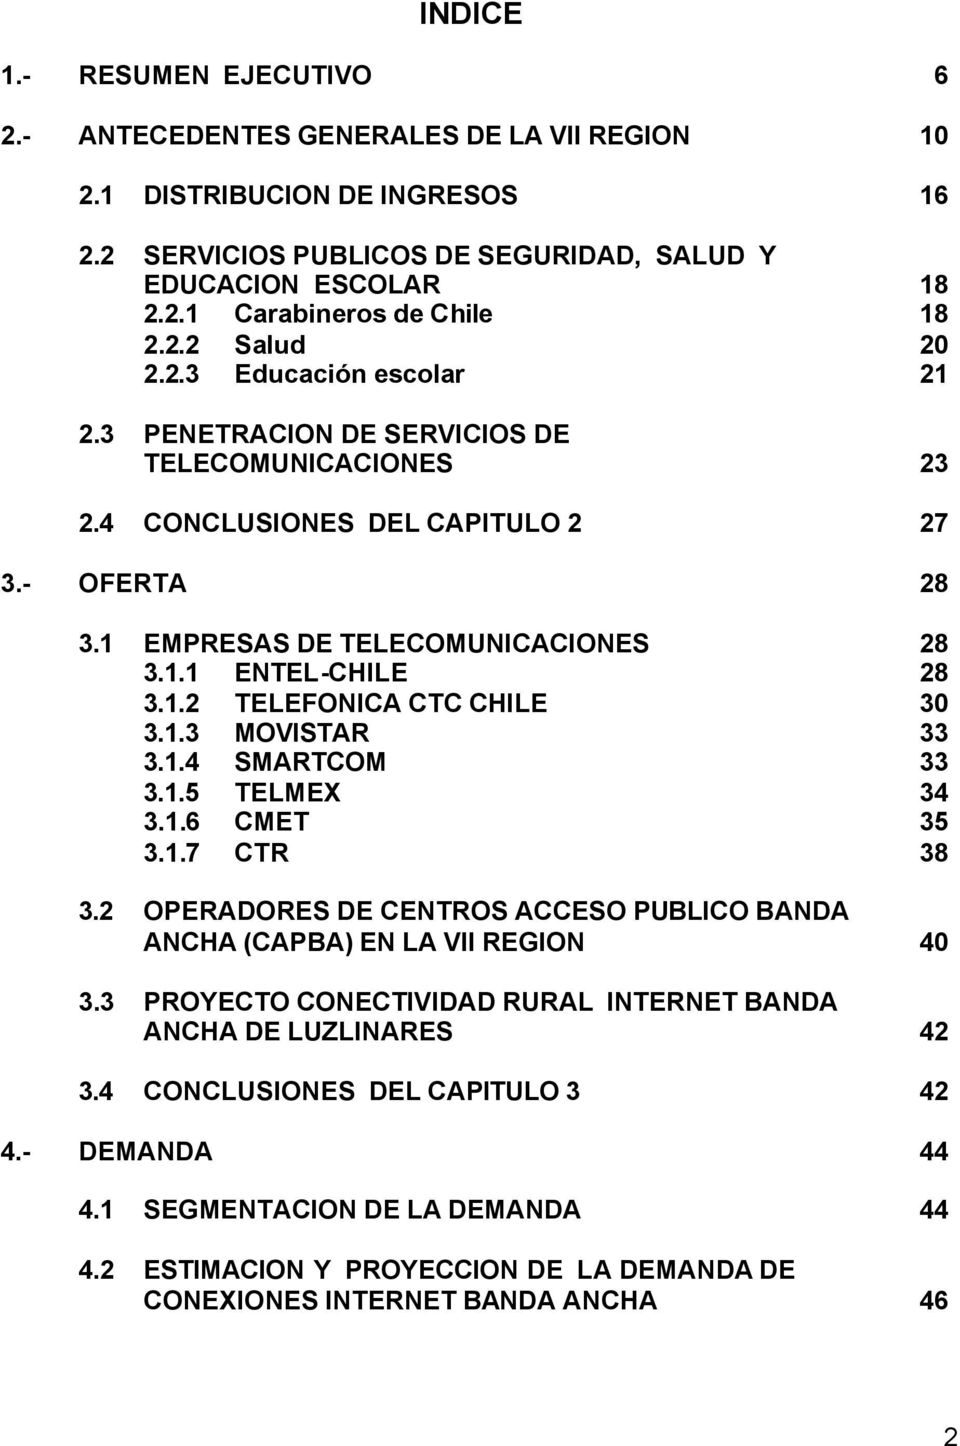 1.2 TELEFONICA CTC CHILE 30 3.1.3 MOVISTAR 33 3.1.4 SMARTCOM 33 3.1.5 TELMEX 34 3.1.6 CMET 35 3.1.7 CTR 38 3.2 OPERADORES DE CENTROS ACCESO PUBLICO BANDA ANCHA (CAPBA) EN LA VII REGION 40 3.